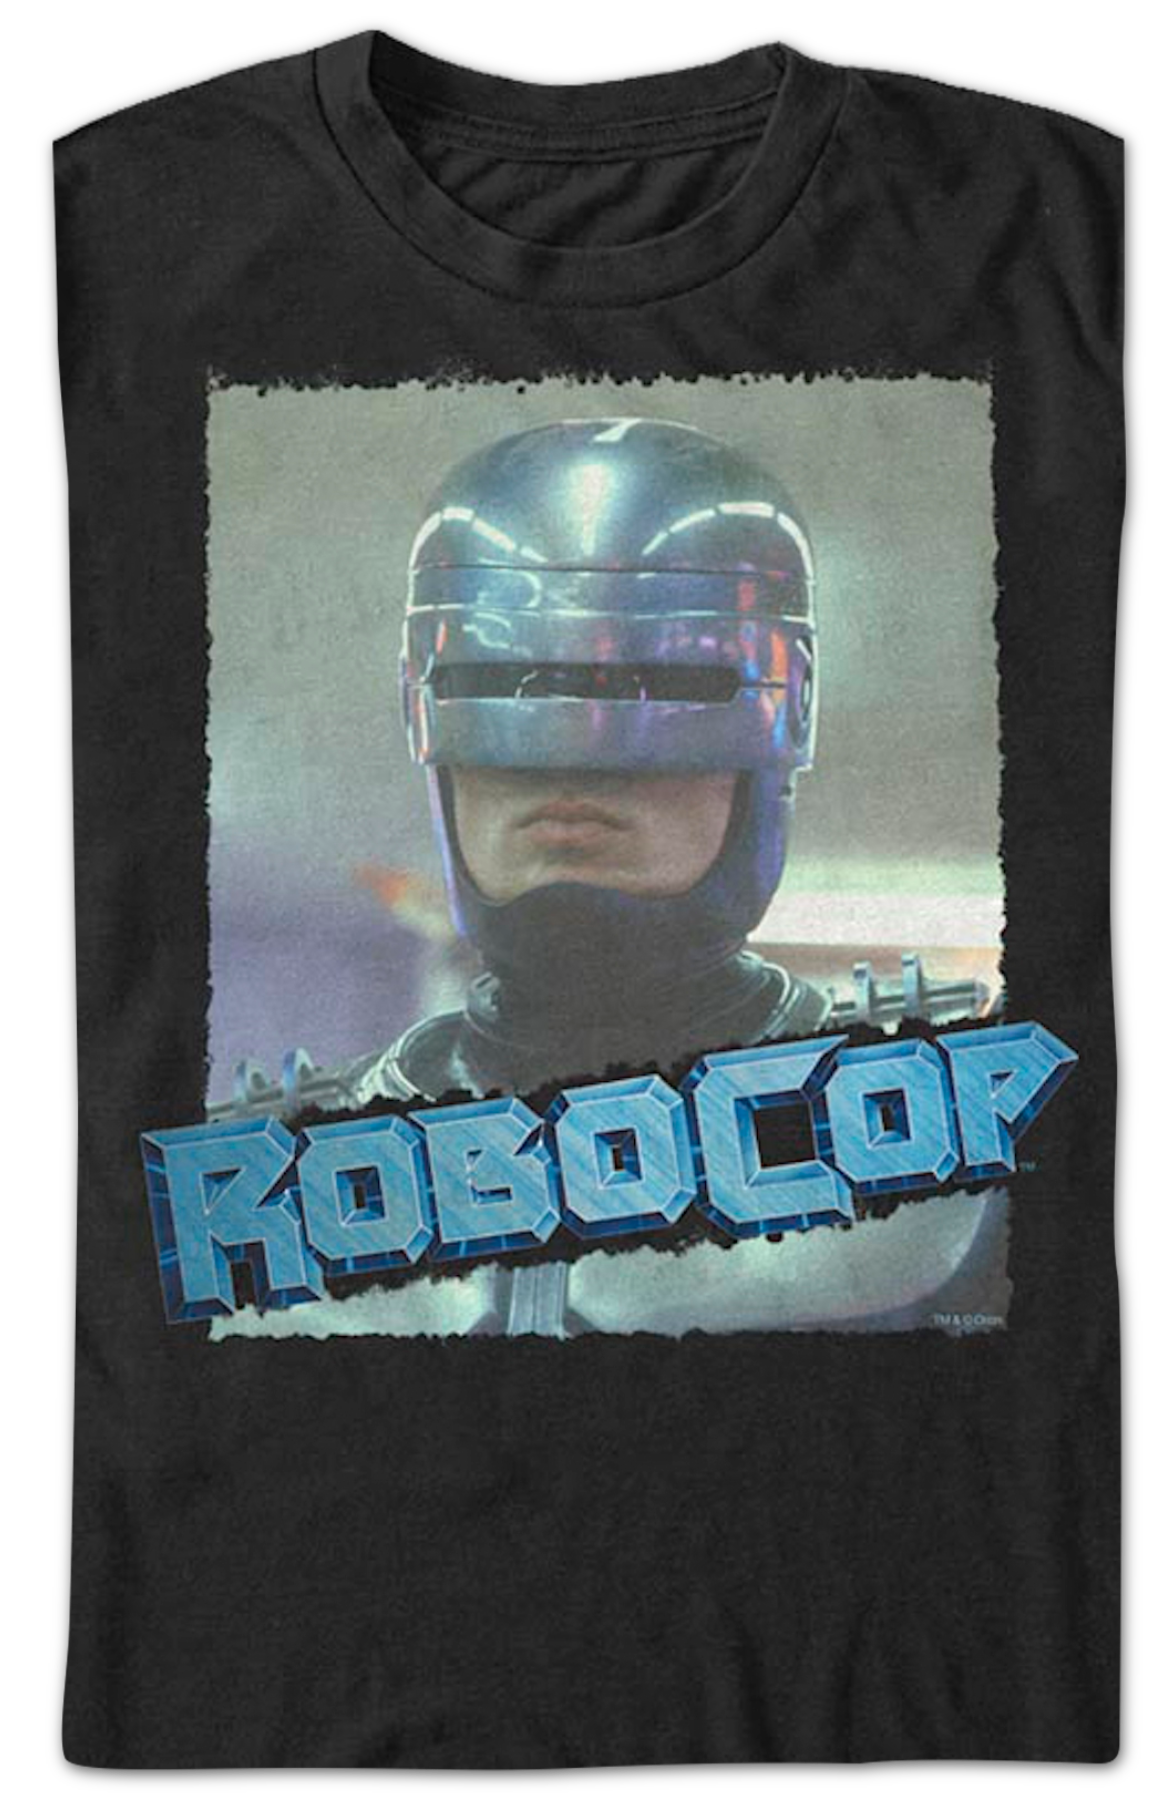 Vintage Photo RoboCop T-Shirt